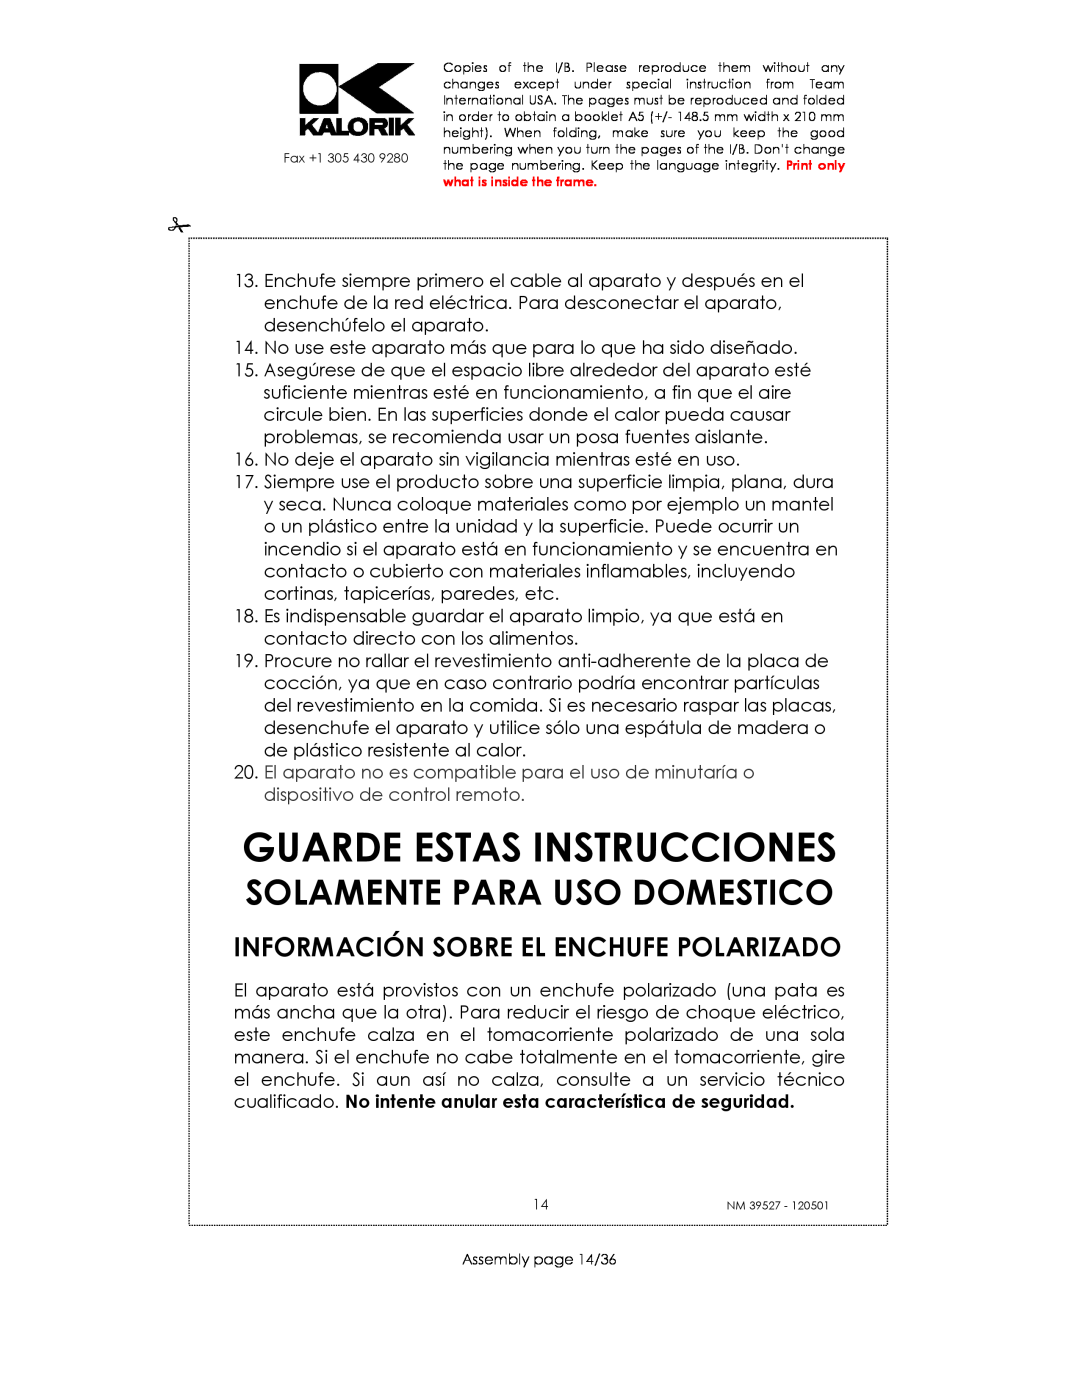 Kalorik NM 39527 manual Guarde Estas Instrucciones, Información Sobre El Enchufe Polarizado, Solamente Para Uso Domestico 